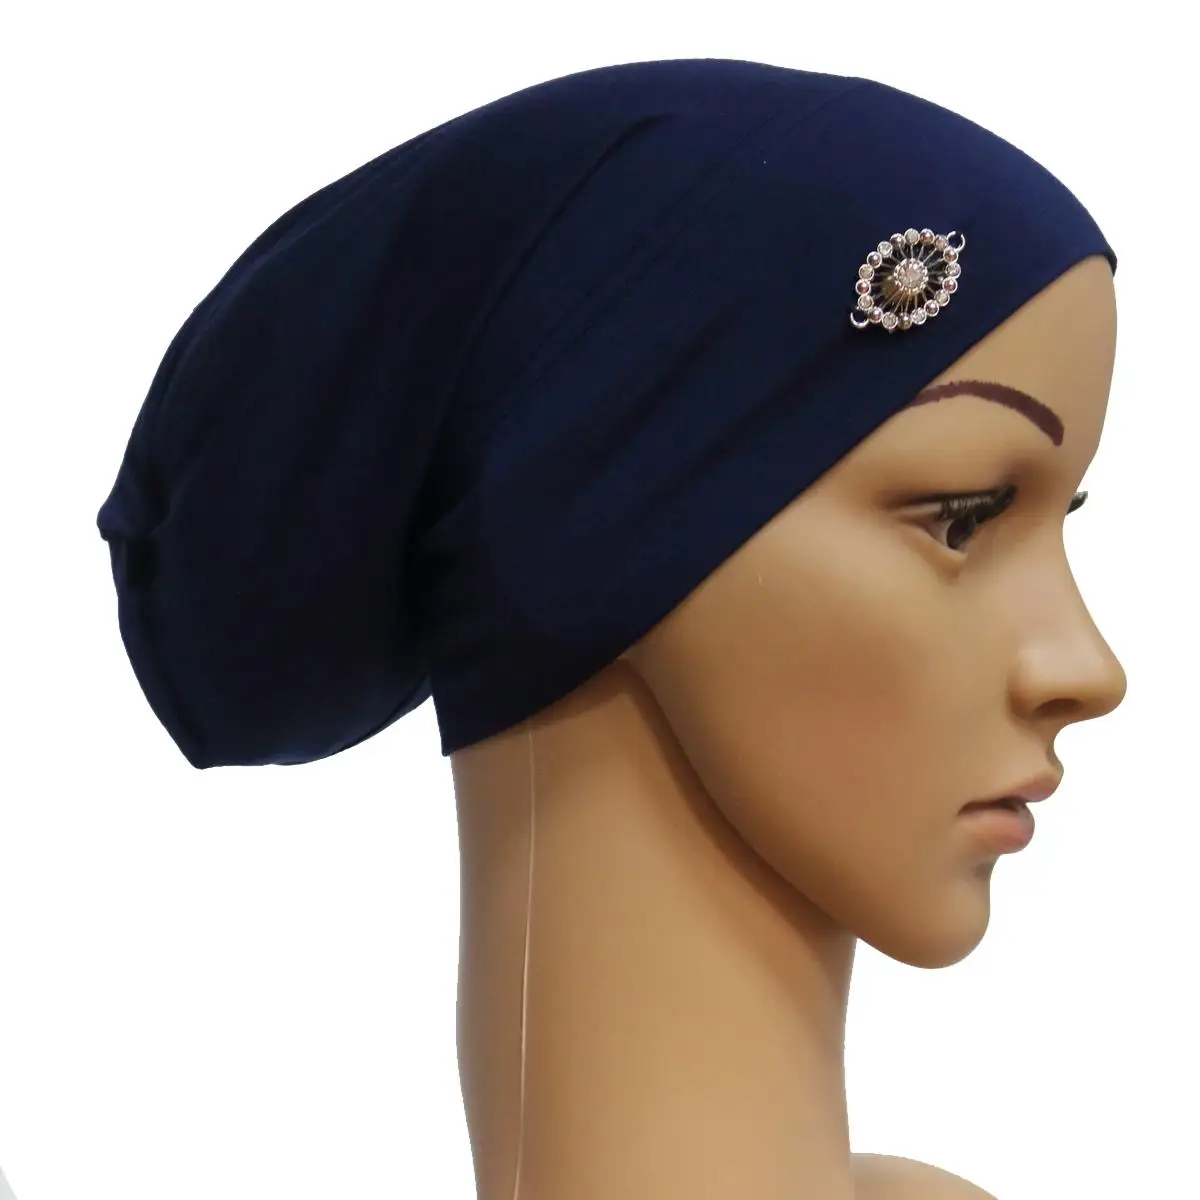 Горный хрусталь под шарф мусульманские женщины кость головной убор тюрбан Beanie исламский головной платок арабский хиджаб шляпа внутренняя Кепка головной убор шапка - Цвет: Синий